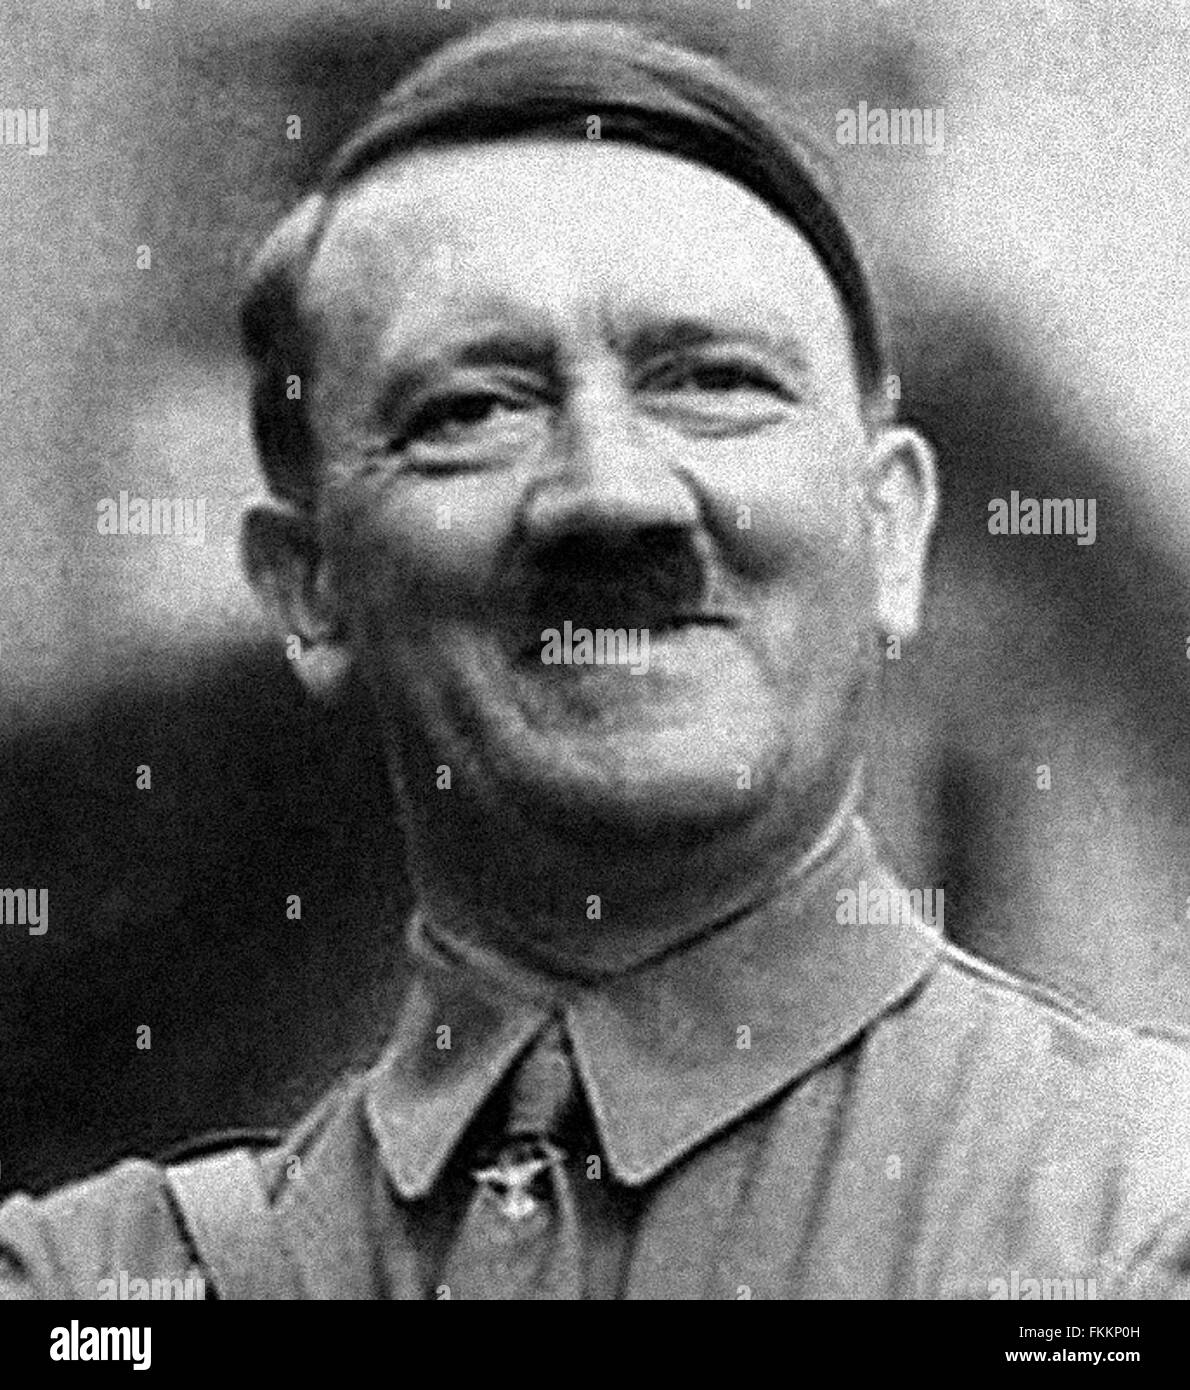 adolf-hitler-una-rara-imagen-del-lider-de-guerra-aleman-sonriente-a-partir-de-los-archivos-de-prensa-servicio-de-retrato-antiguo-retrato-de-prensa-mesa-fkkp0h.jpg